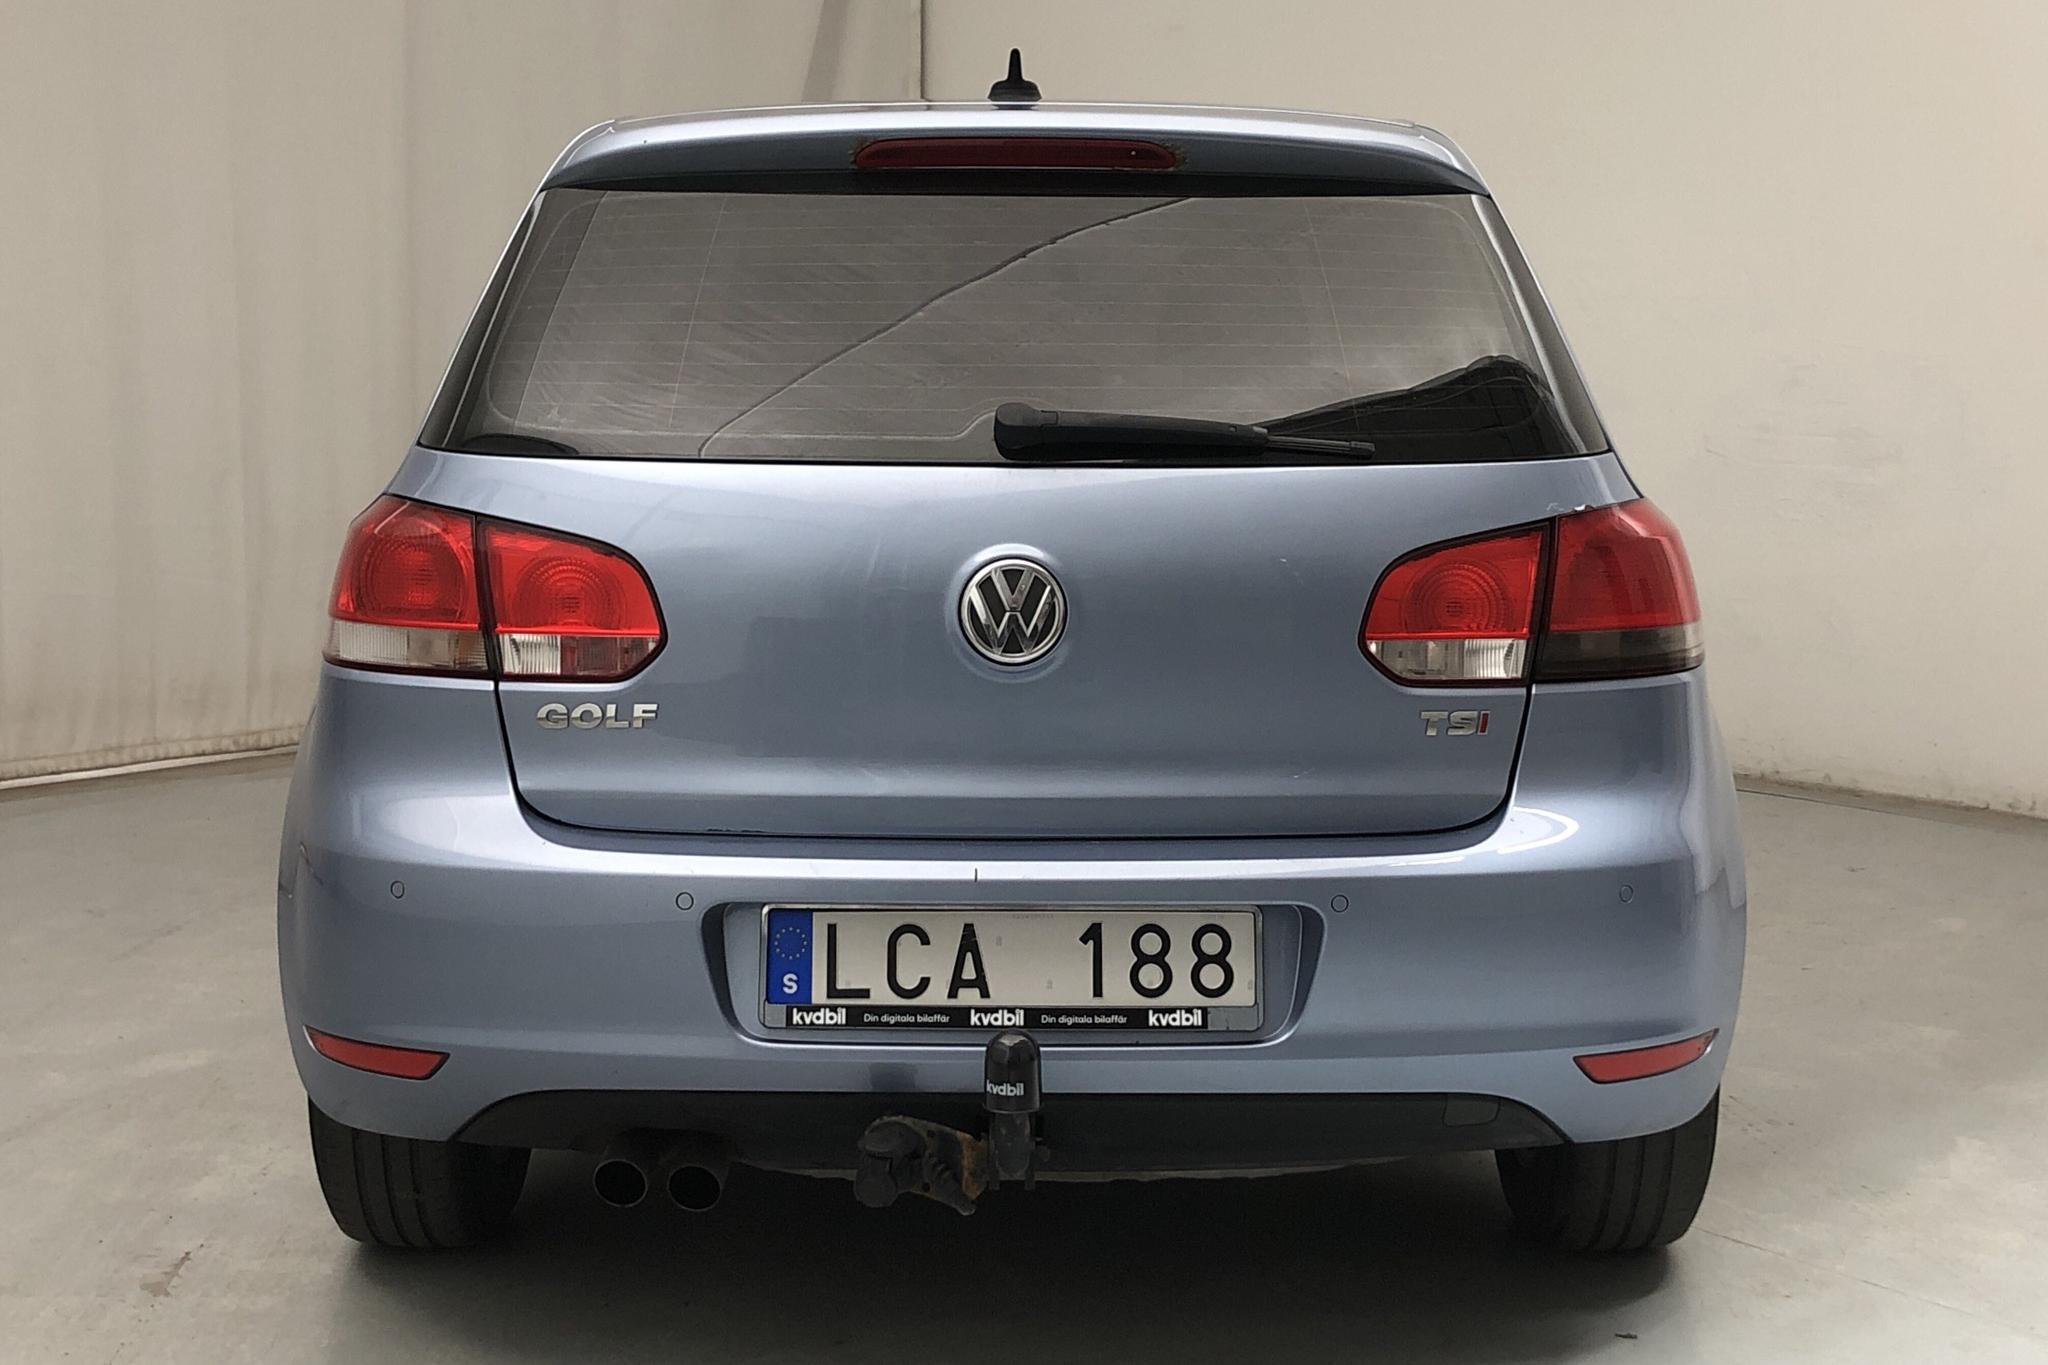 VW Golf VI 1.4 TSI 5dr (122hk) - 166 870 km - Manual - Light Blue - 2011